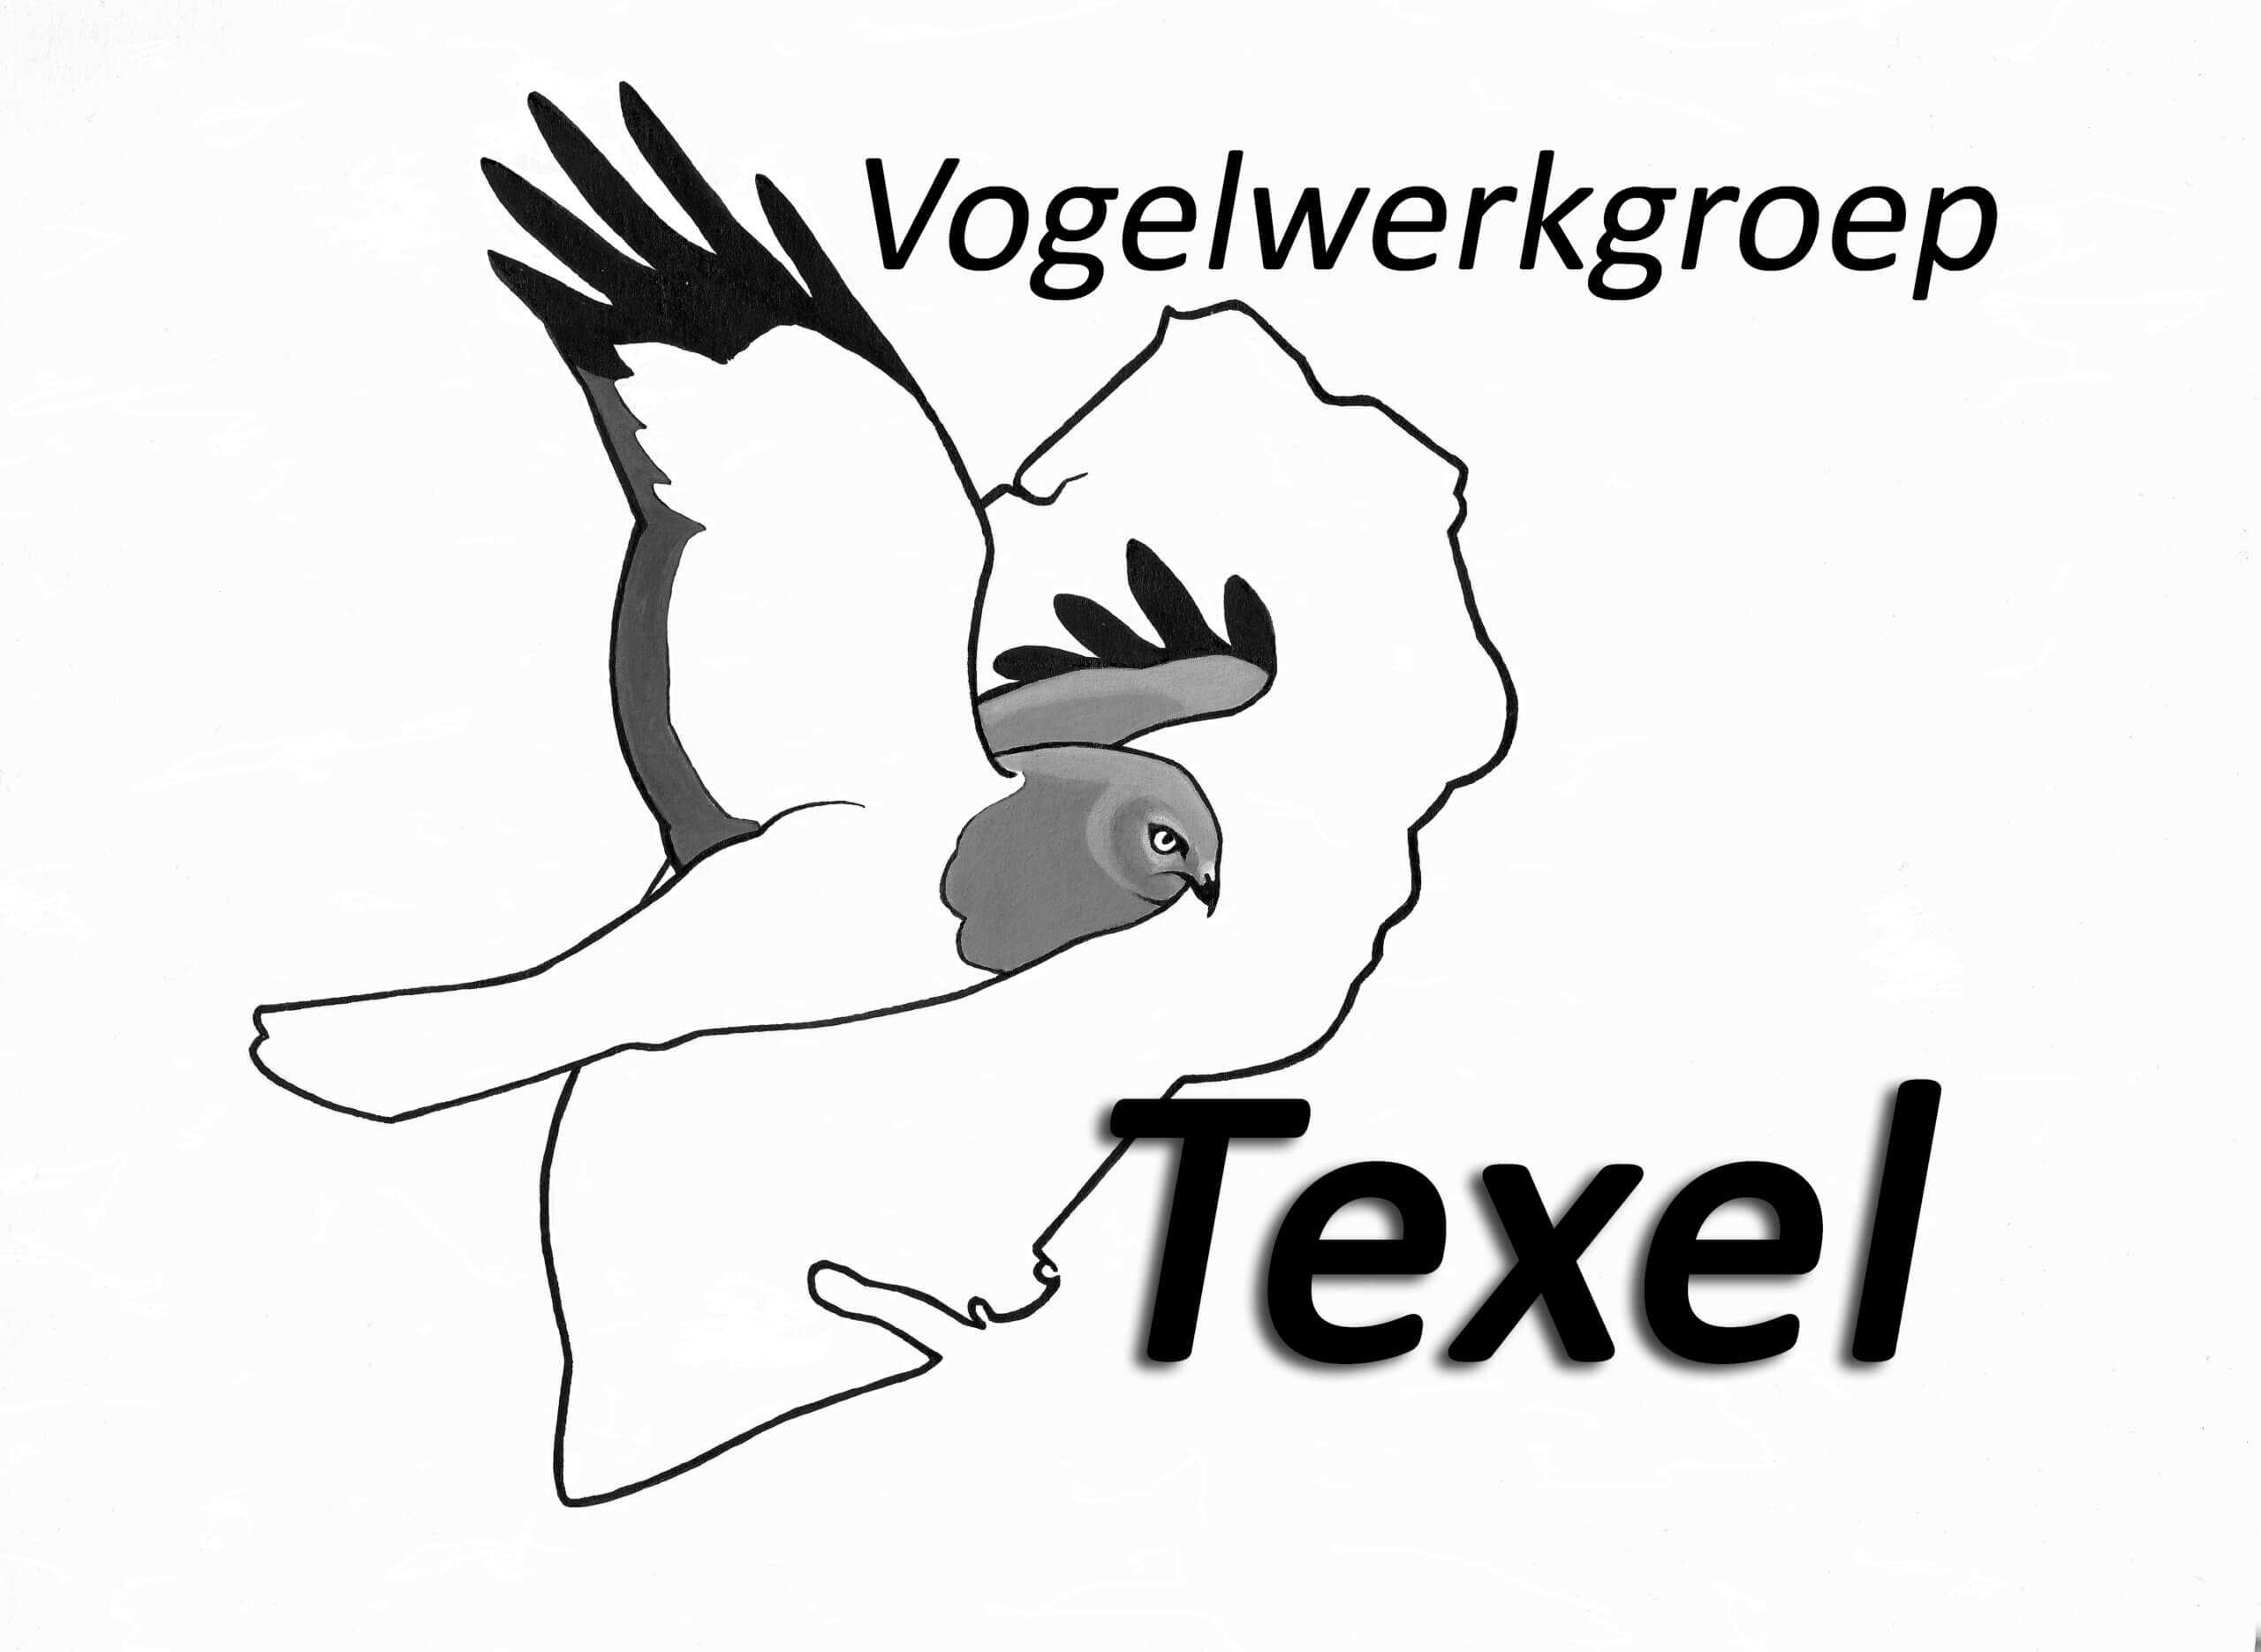 Vogelwerkgroep Texel